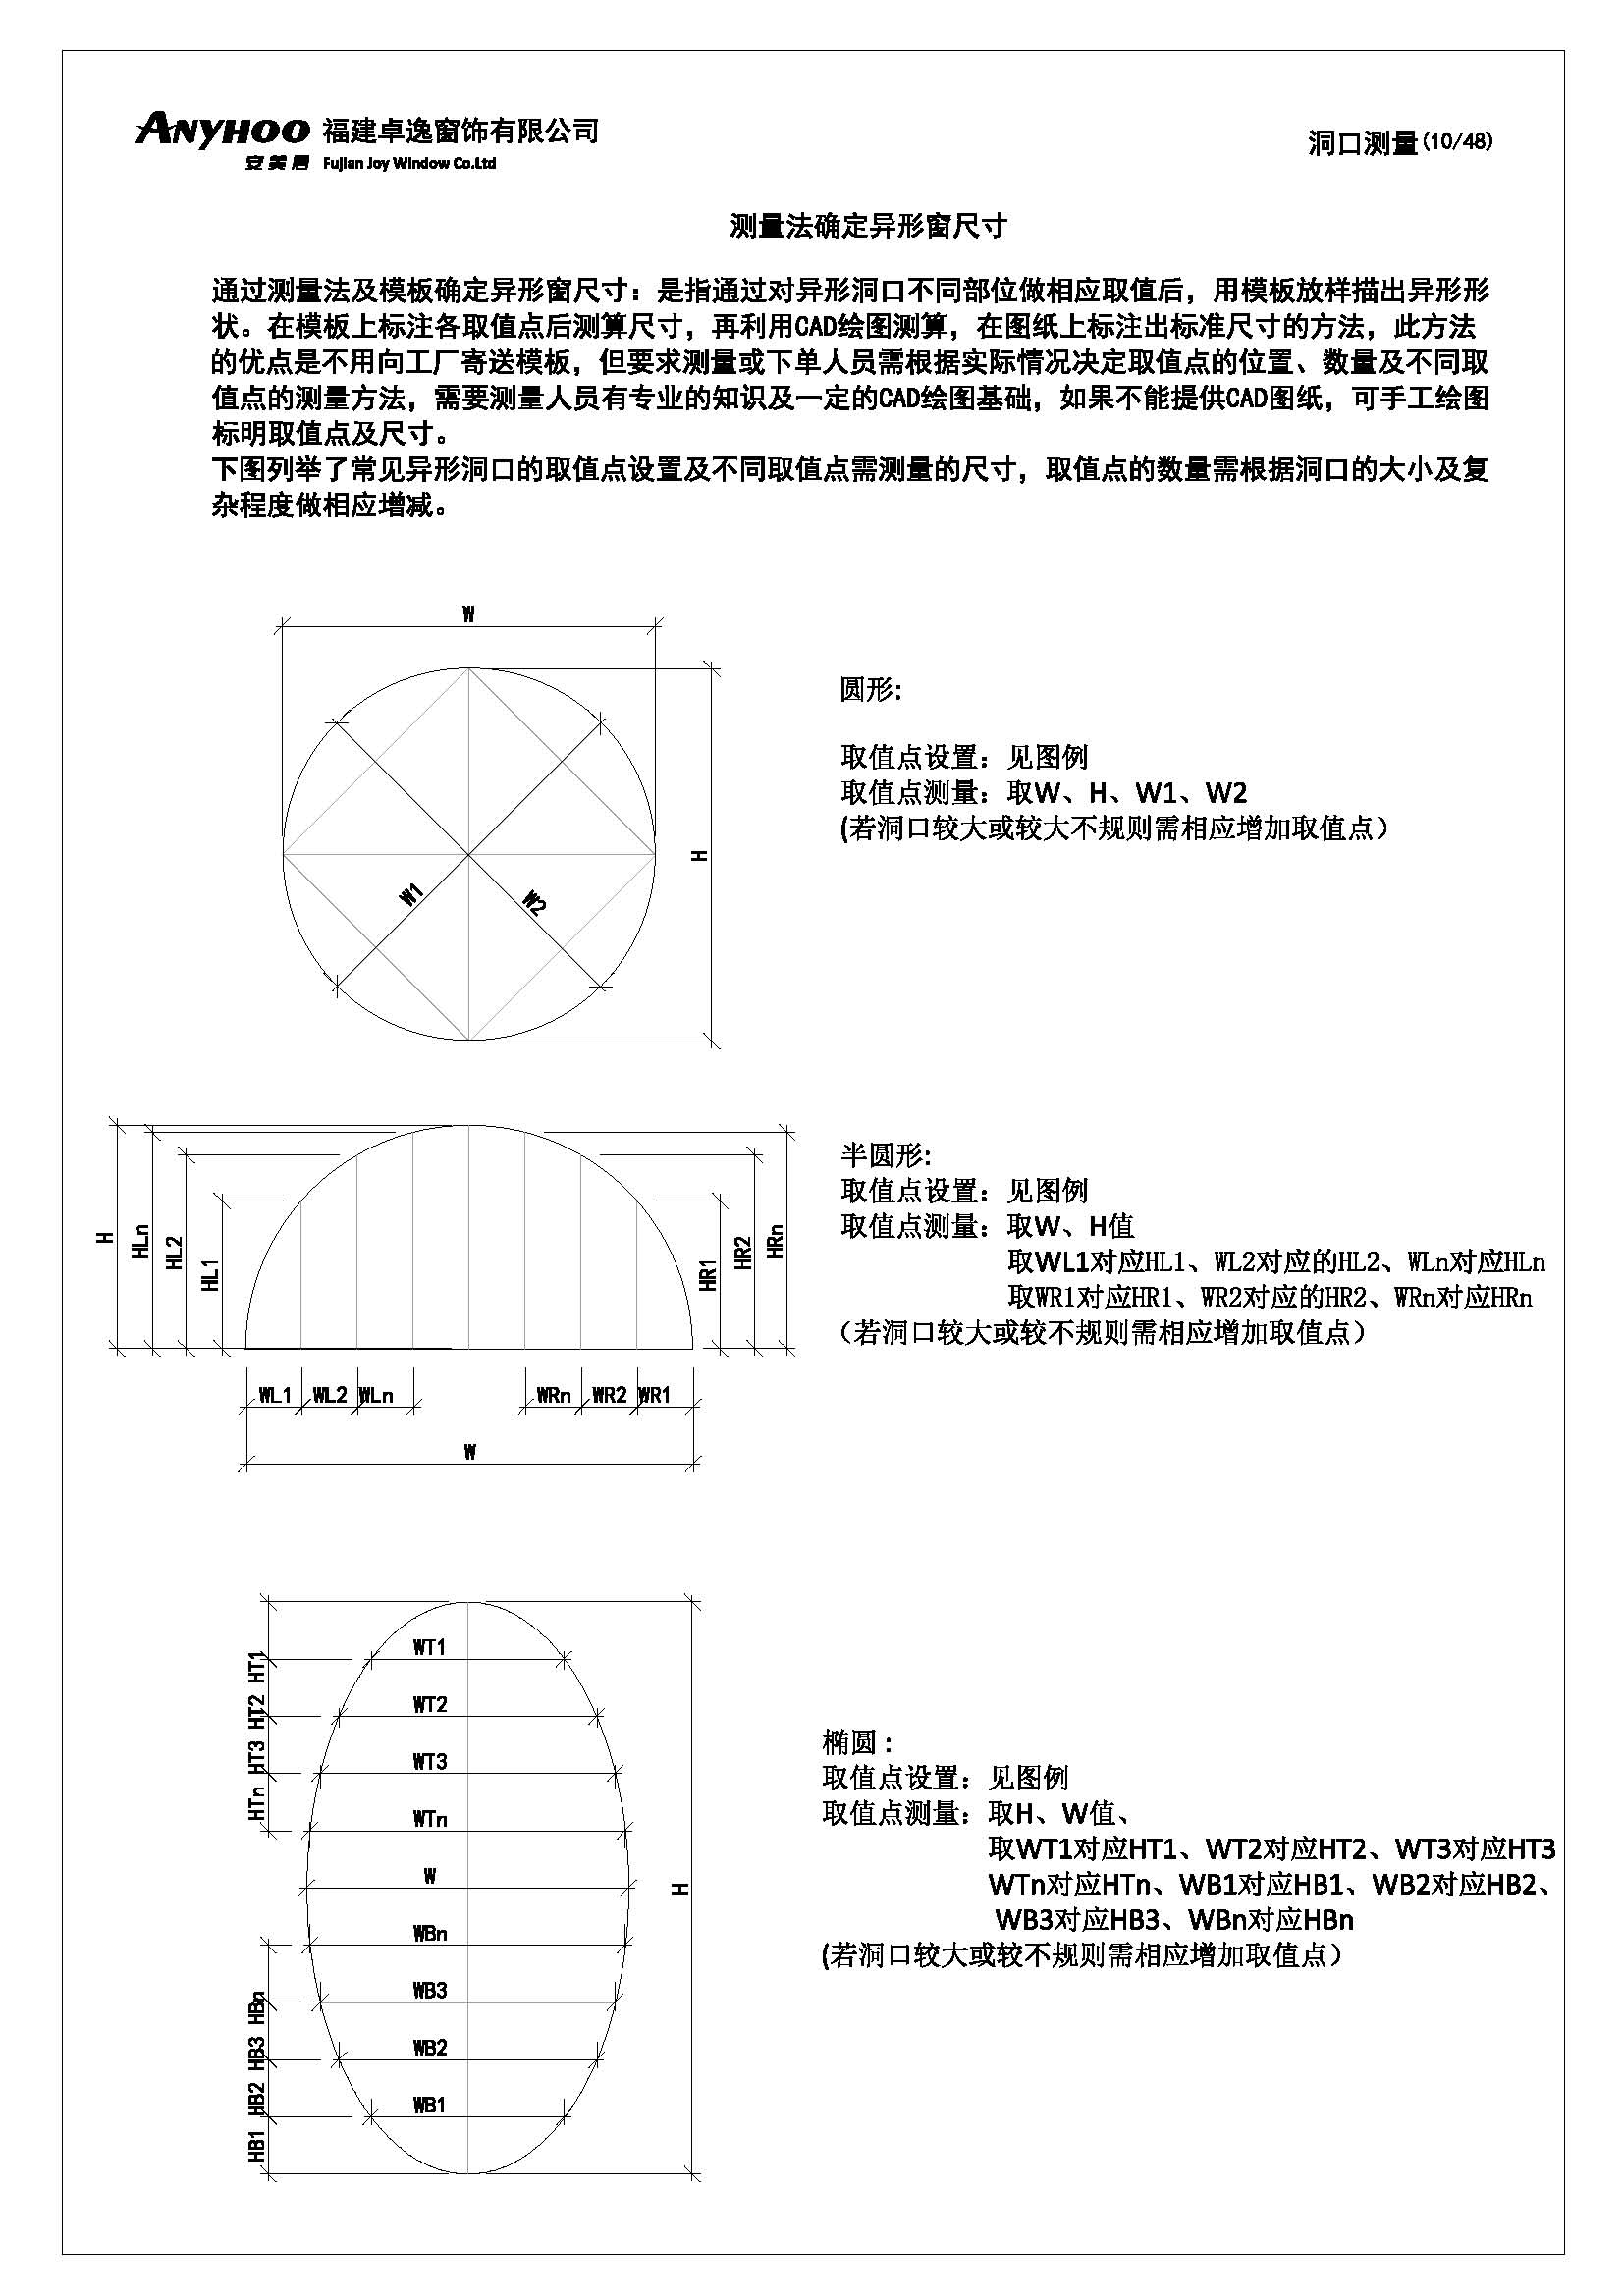 anyhoo技术手册中文版20190711(1)_页面_10.jpg